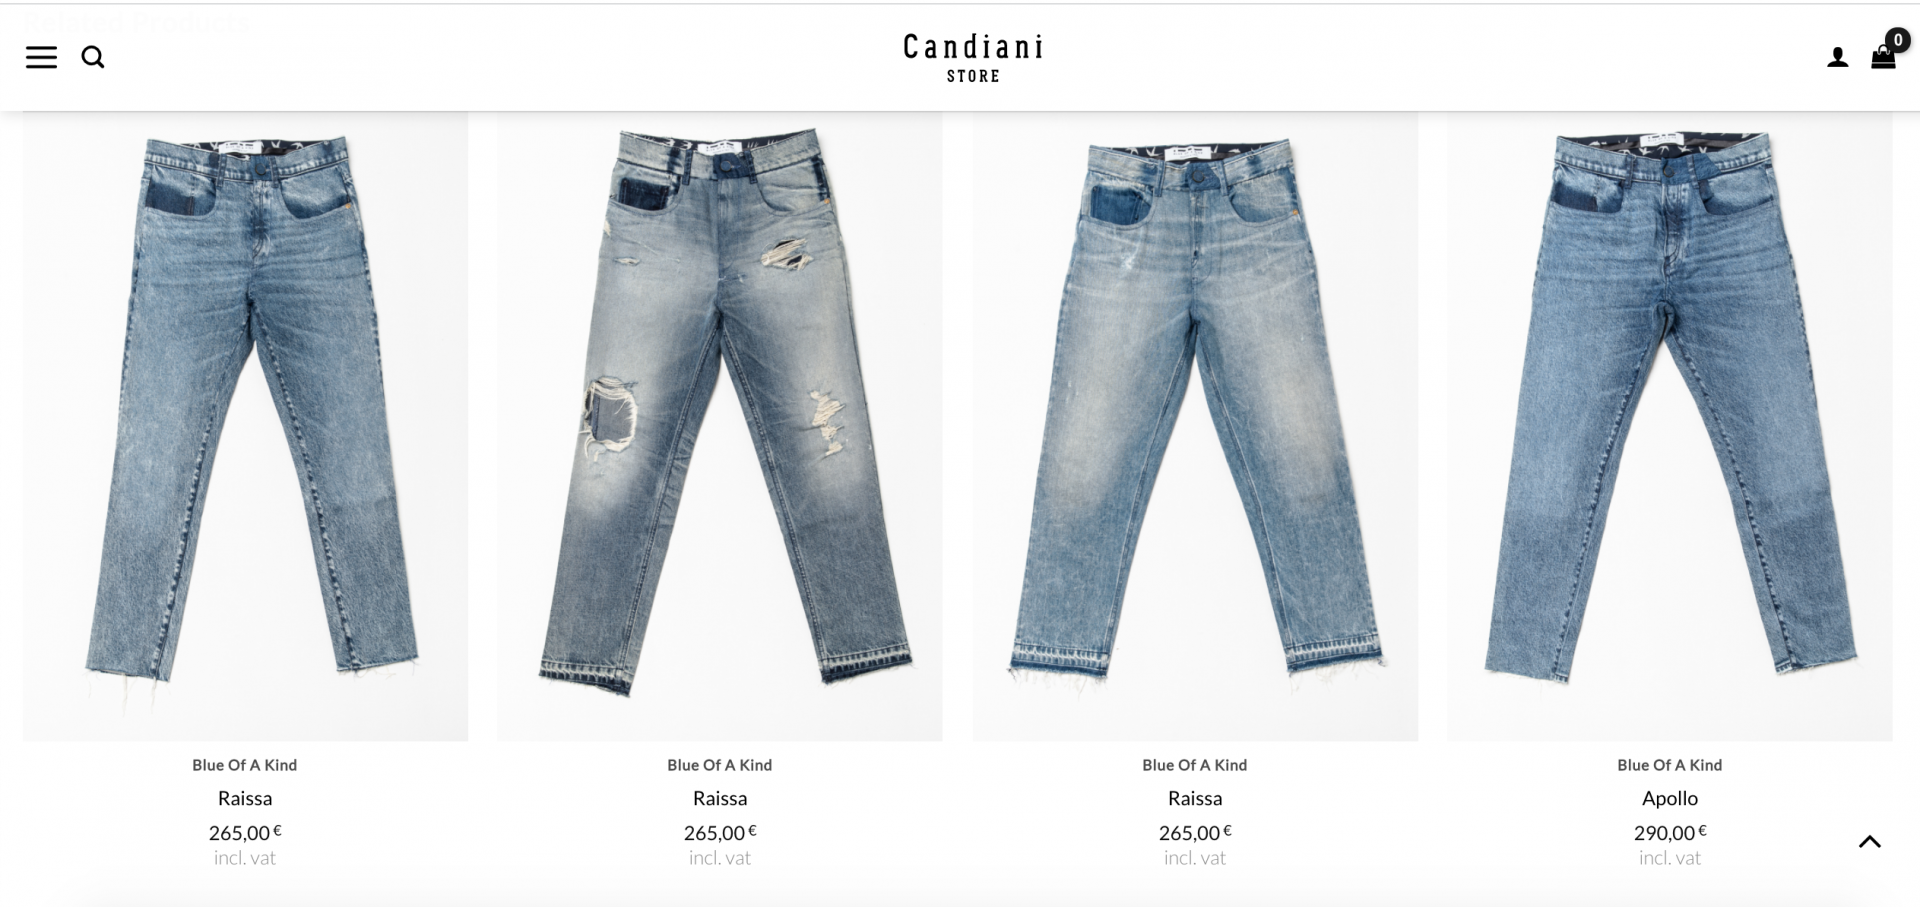 Chiếc quần hiện đang bán trên trang web của hãng với giá 265 Euro, với nhiều kiểu dáng và màu sắc khác nhau.